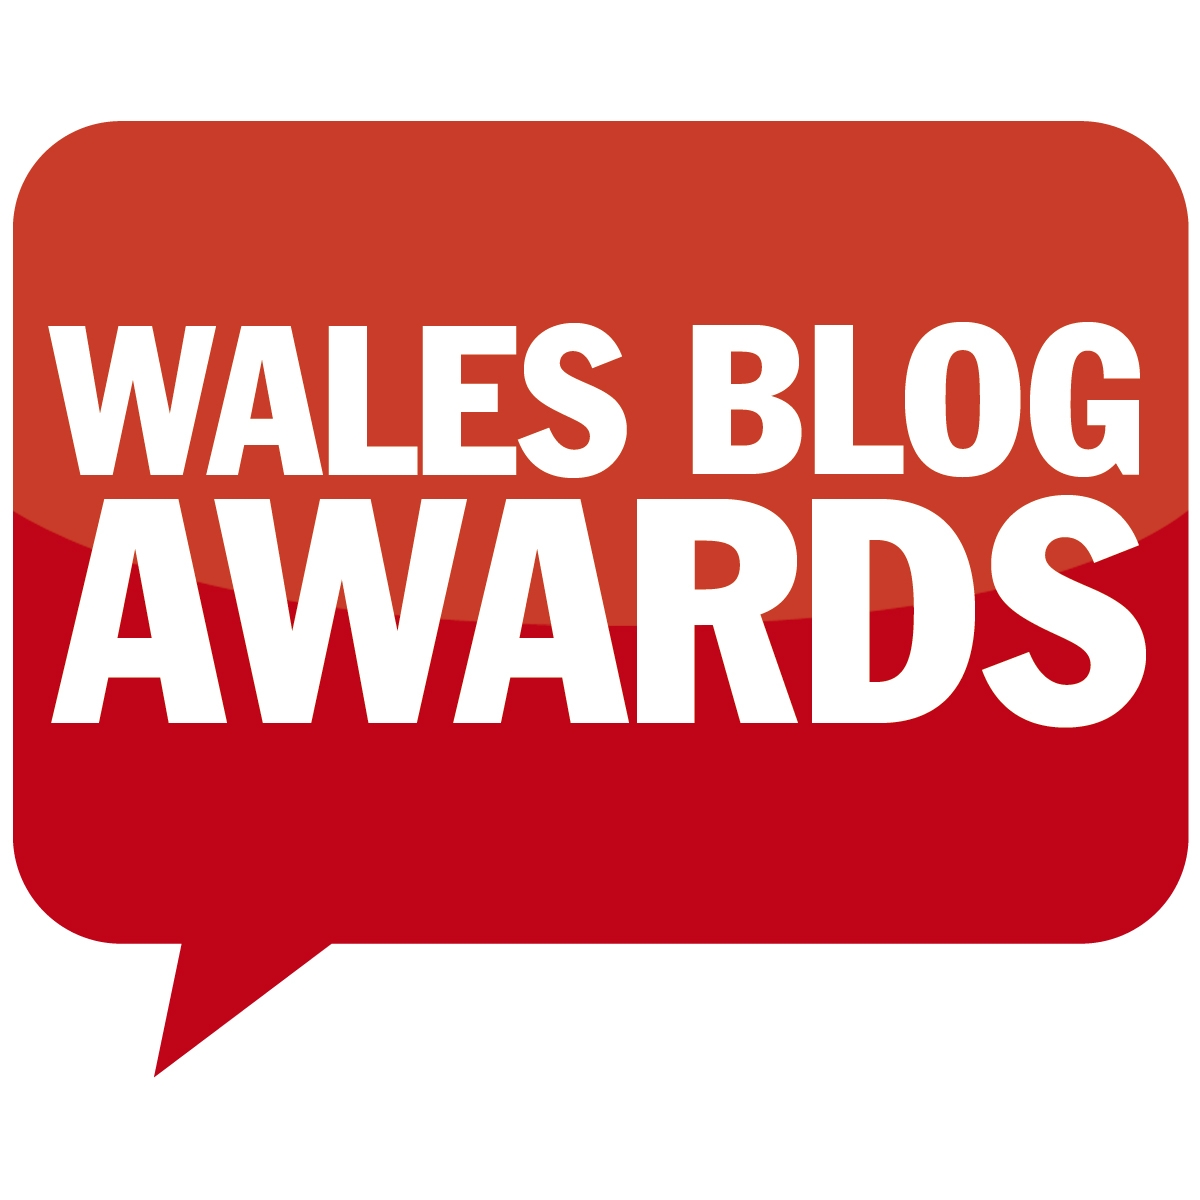 Wales Blog Awards